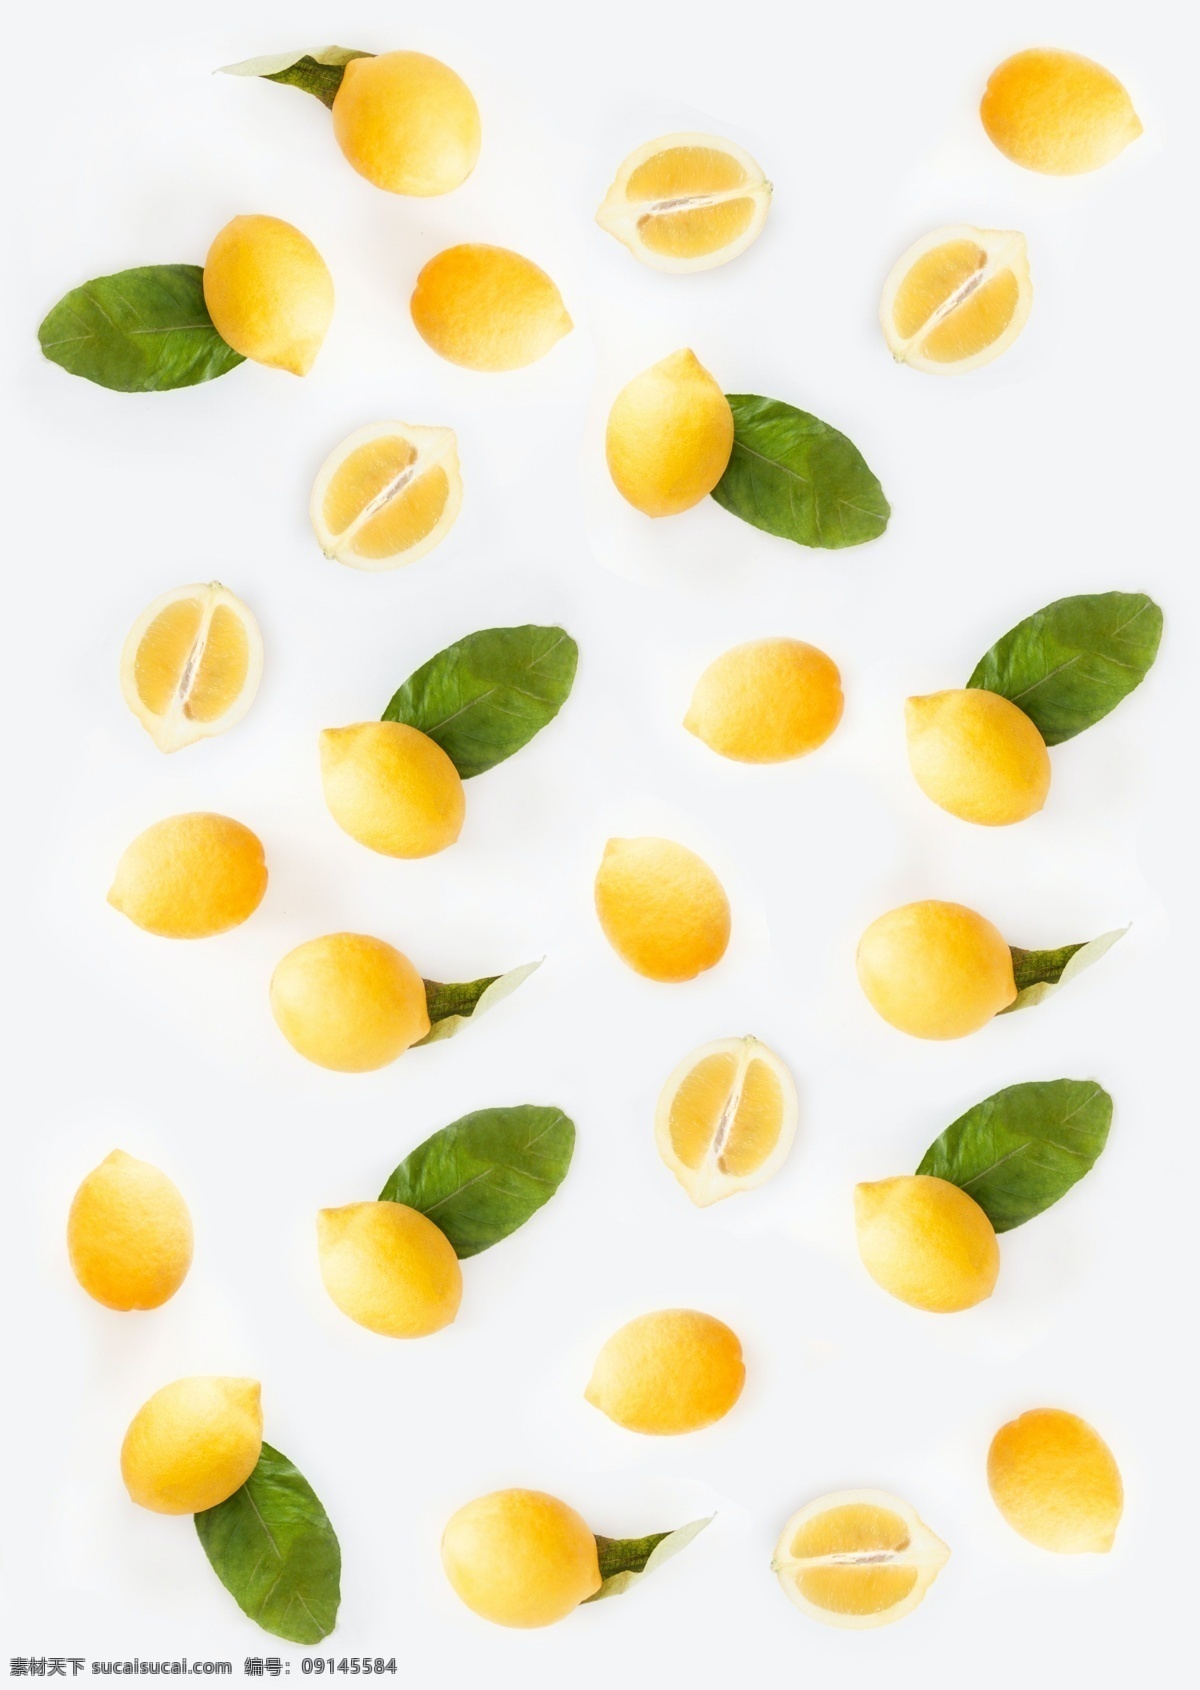 柠檬背景 柠檬 水果 食物 食品 新鲜 水果背景 饮食 健康 绿色食品 生物世界 高清 tiff 桌面 高清壁纸 壁纸 拍摄 摆拍 高清摄影 水果摄影 美食摄影